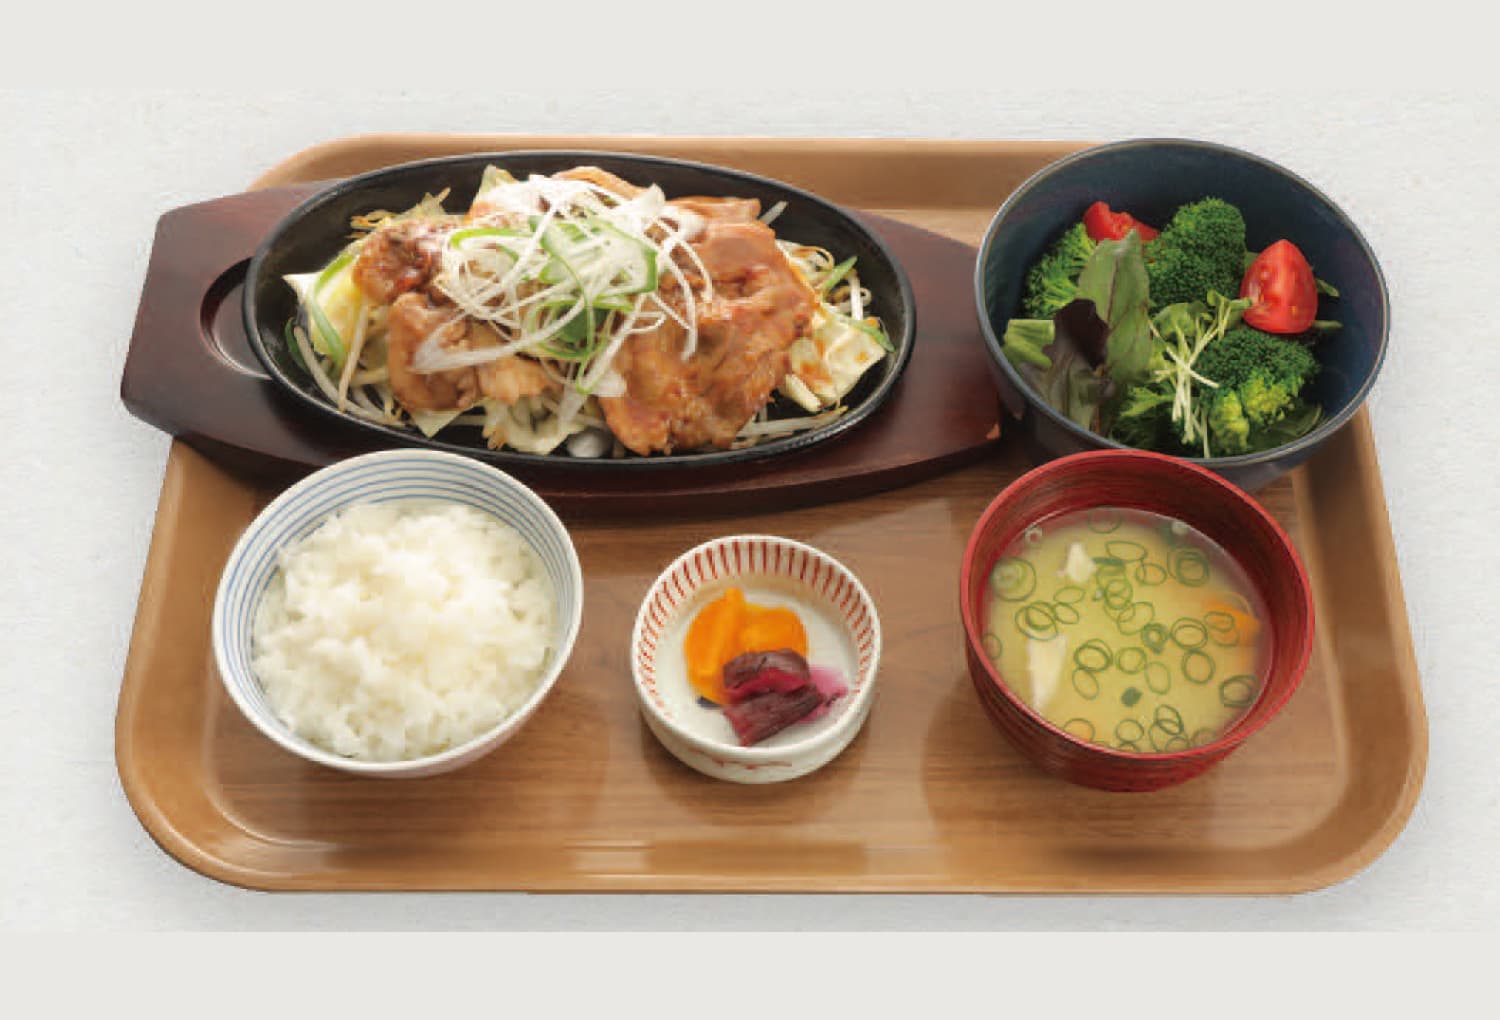 アツアツ鉄板の豚ロース生姜焼き定食 1,450円